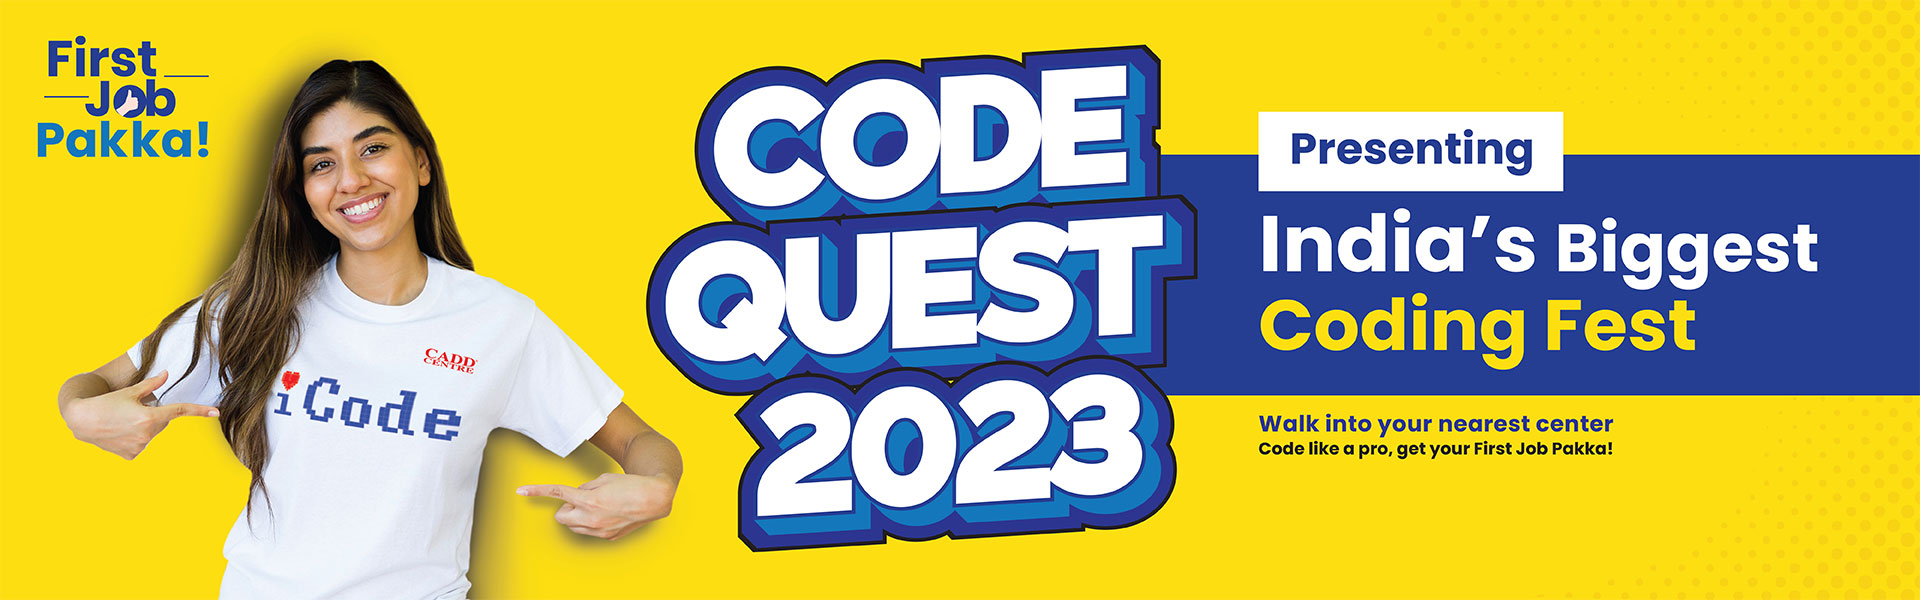 CADD Code Quest